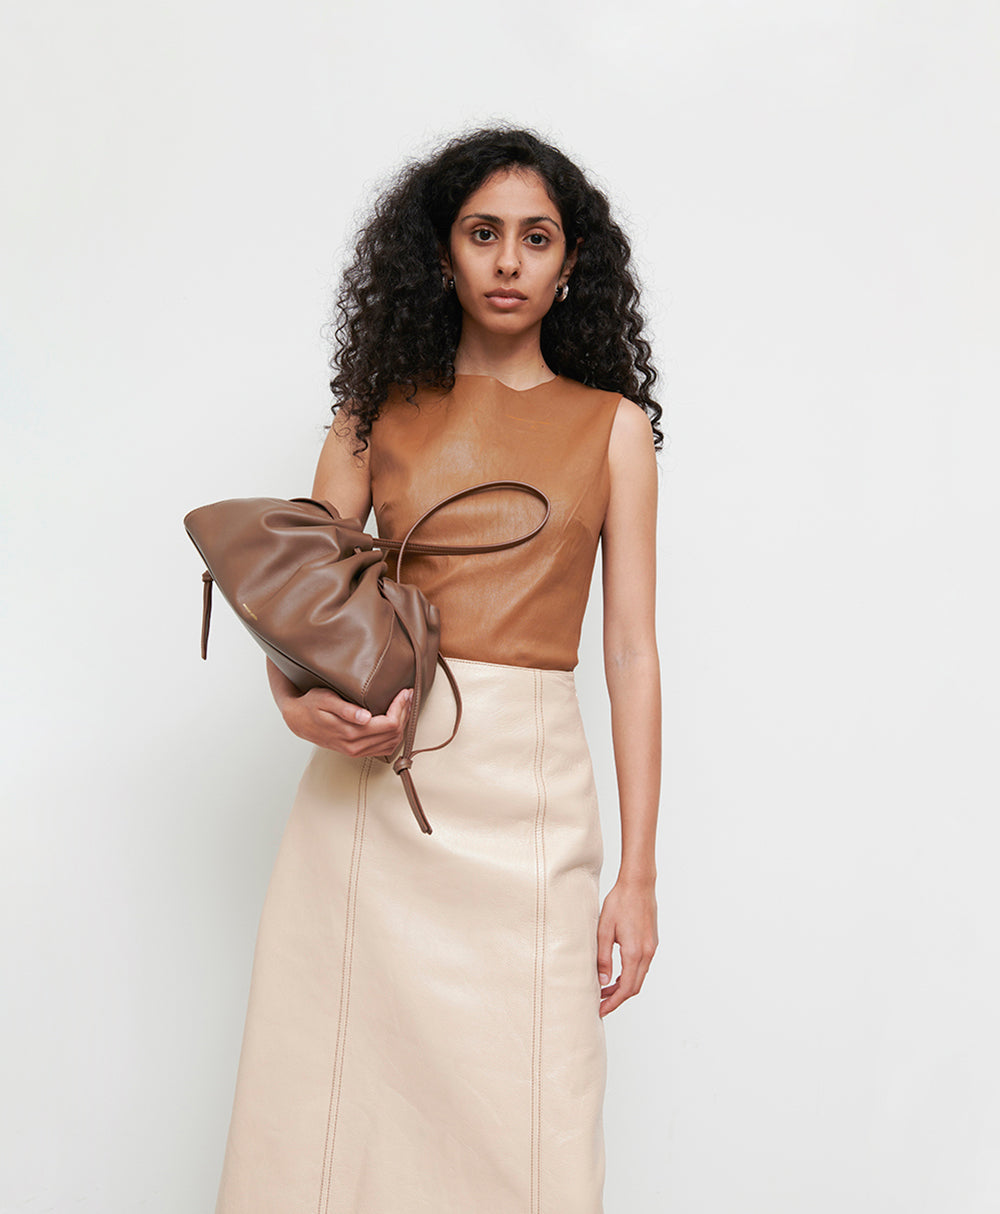 Designer Clutches, Luxury Clutch Bags for Women | MANSUR GAVRIEL®